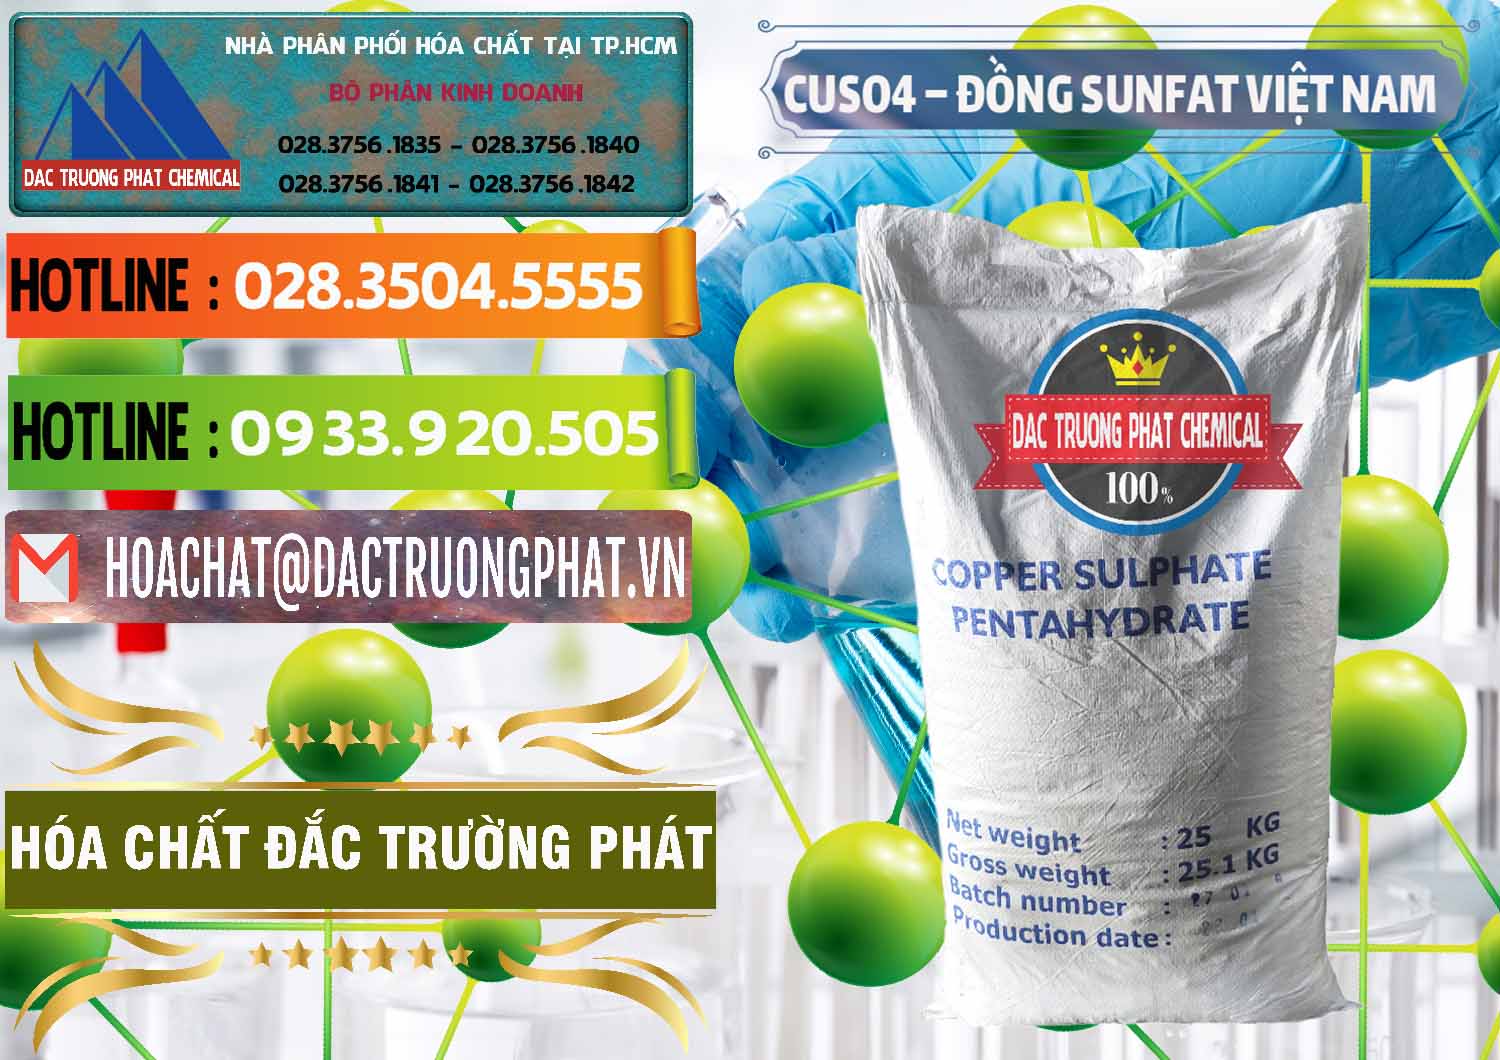 Công ty cung cấp & bán CuSO4 – Đồng Sunfat Dạng Bột Việt Nam - 0196 - Công ty chuyên cung cấp & kinh doanh hóa chất tại TP.HCM - cungcaphoachat.com.vn